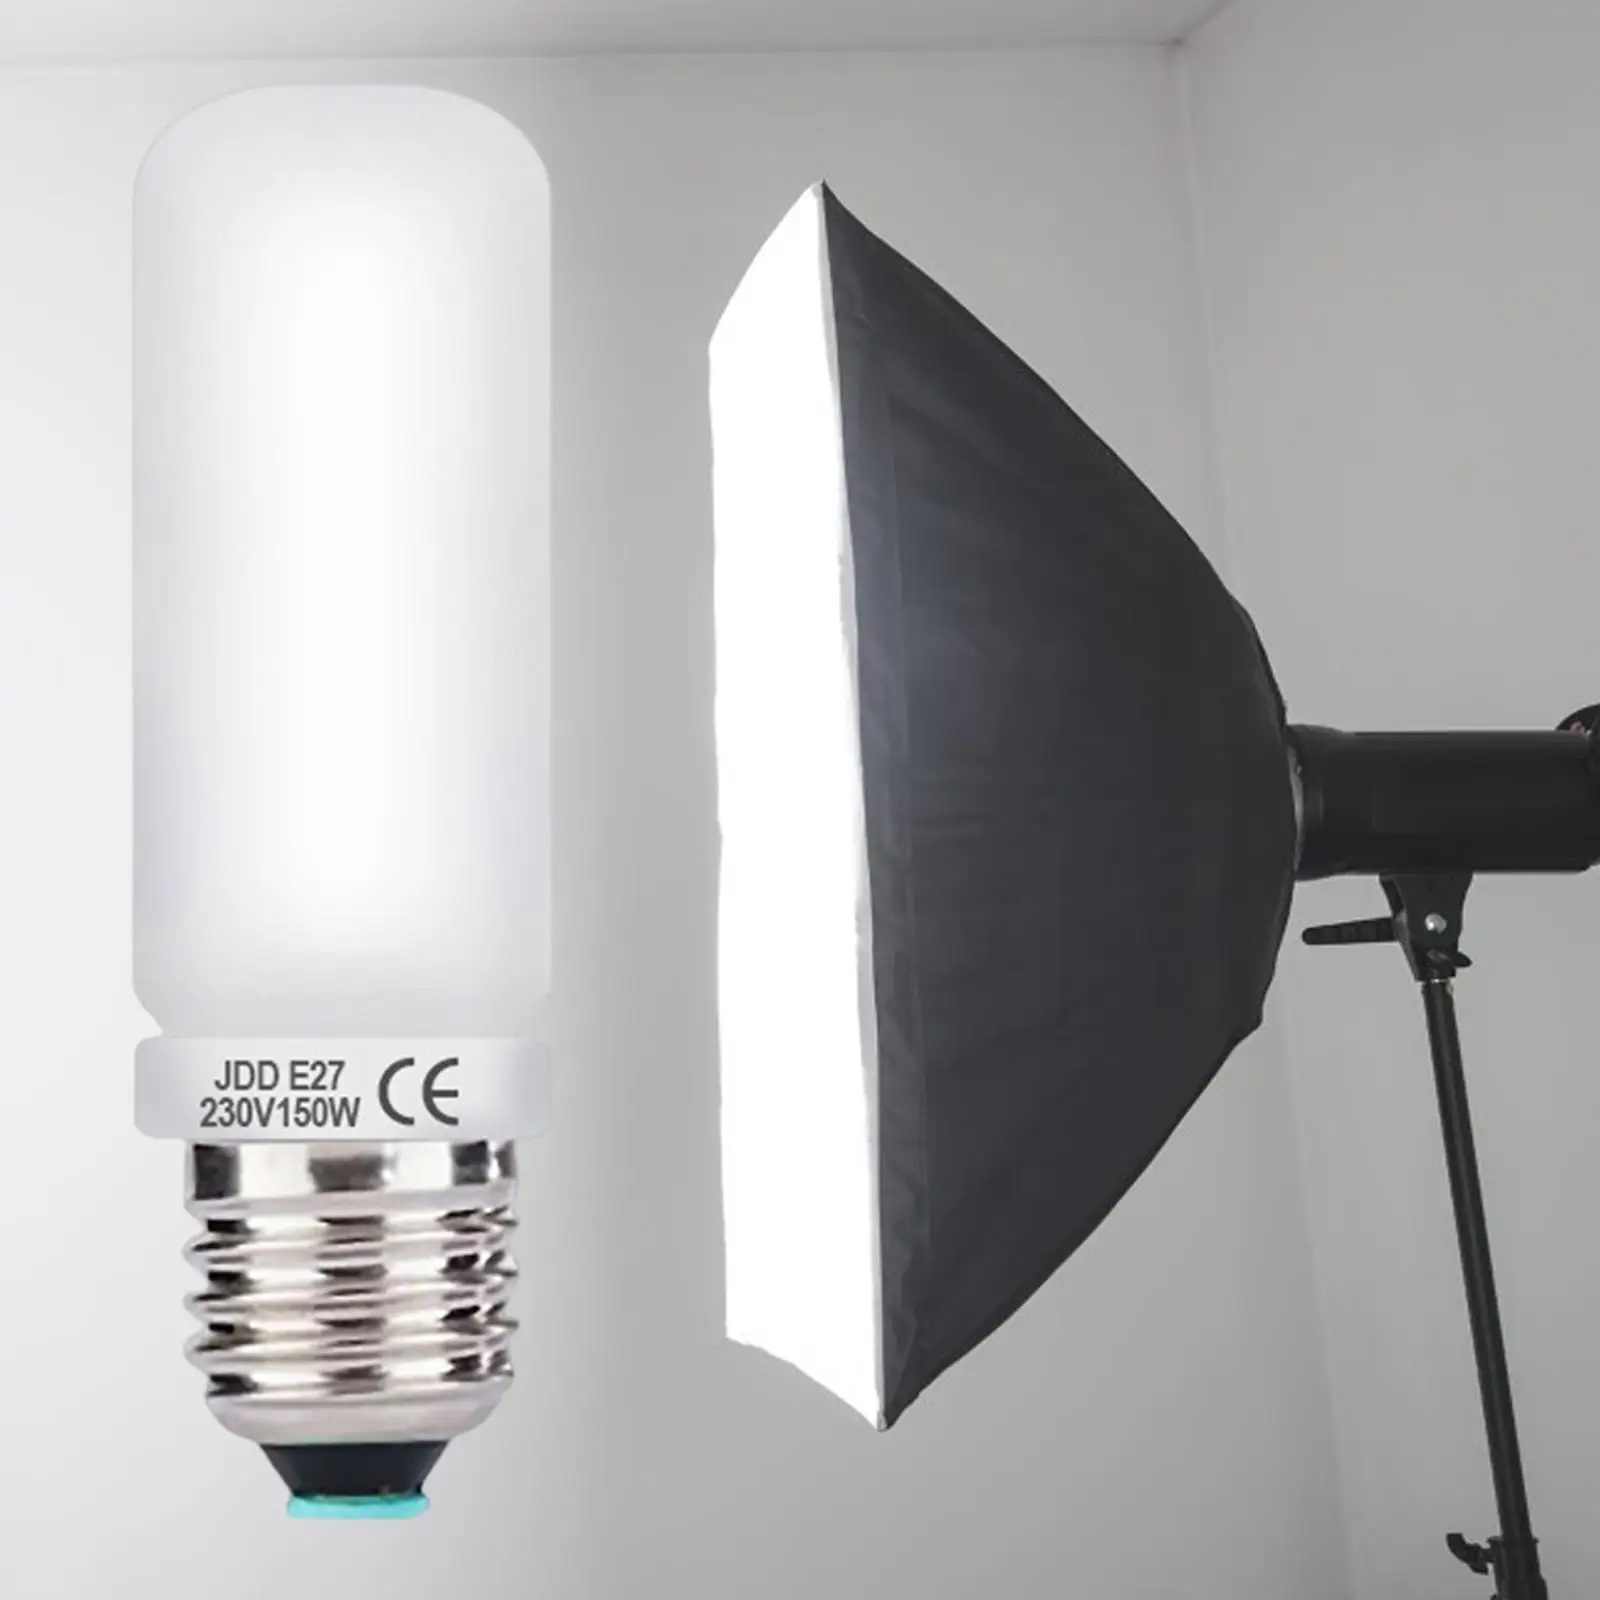 Flash Modeling Light Tube Lamp Bulb Tube Lamp Bulb for Photo Studio Modeling Light Flash Lamp Strobe Lighting Stable Performance